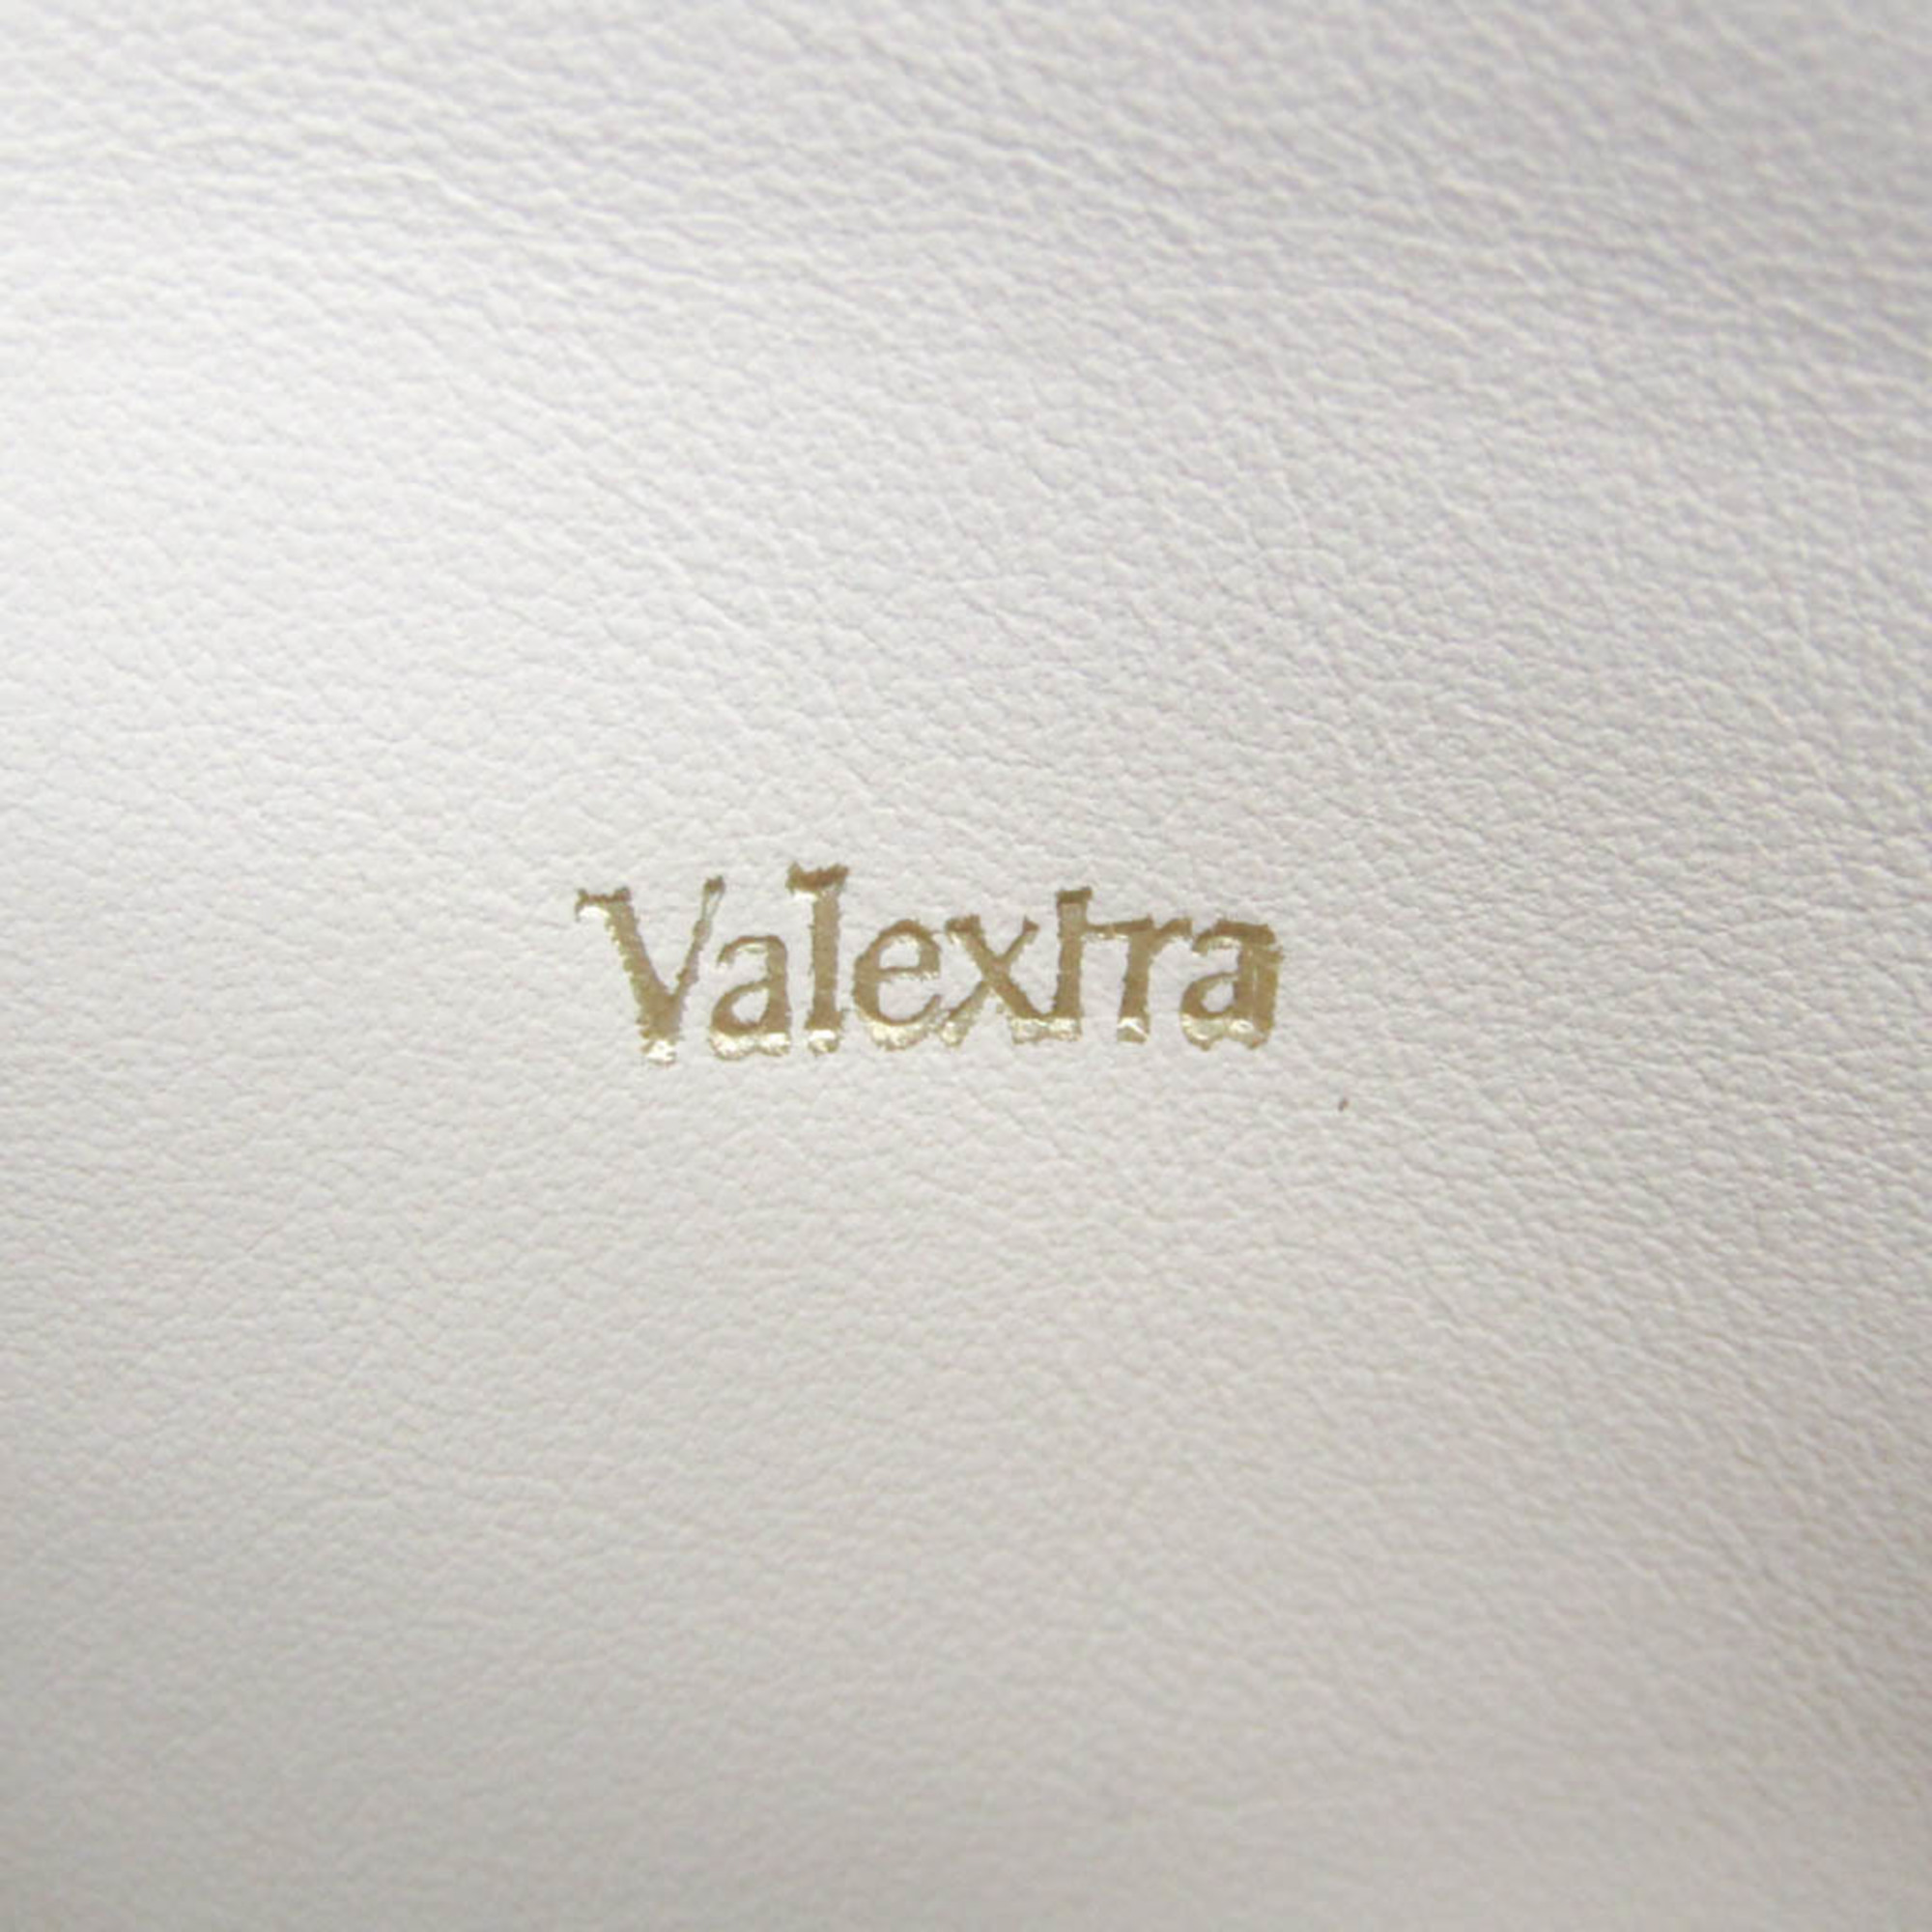 ヴァレクストラ(Valextra) メンズ レザー クラッチバッグ ネイビー